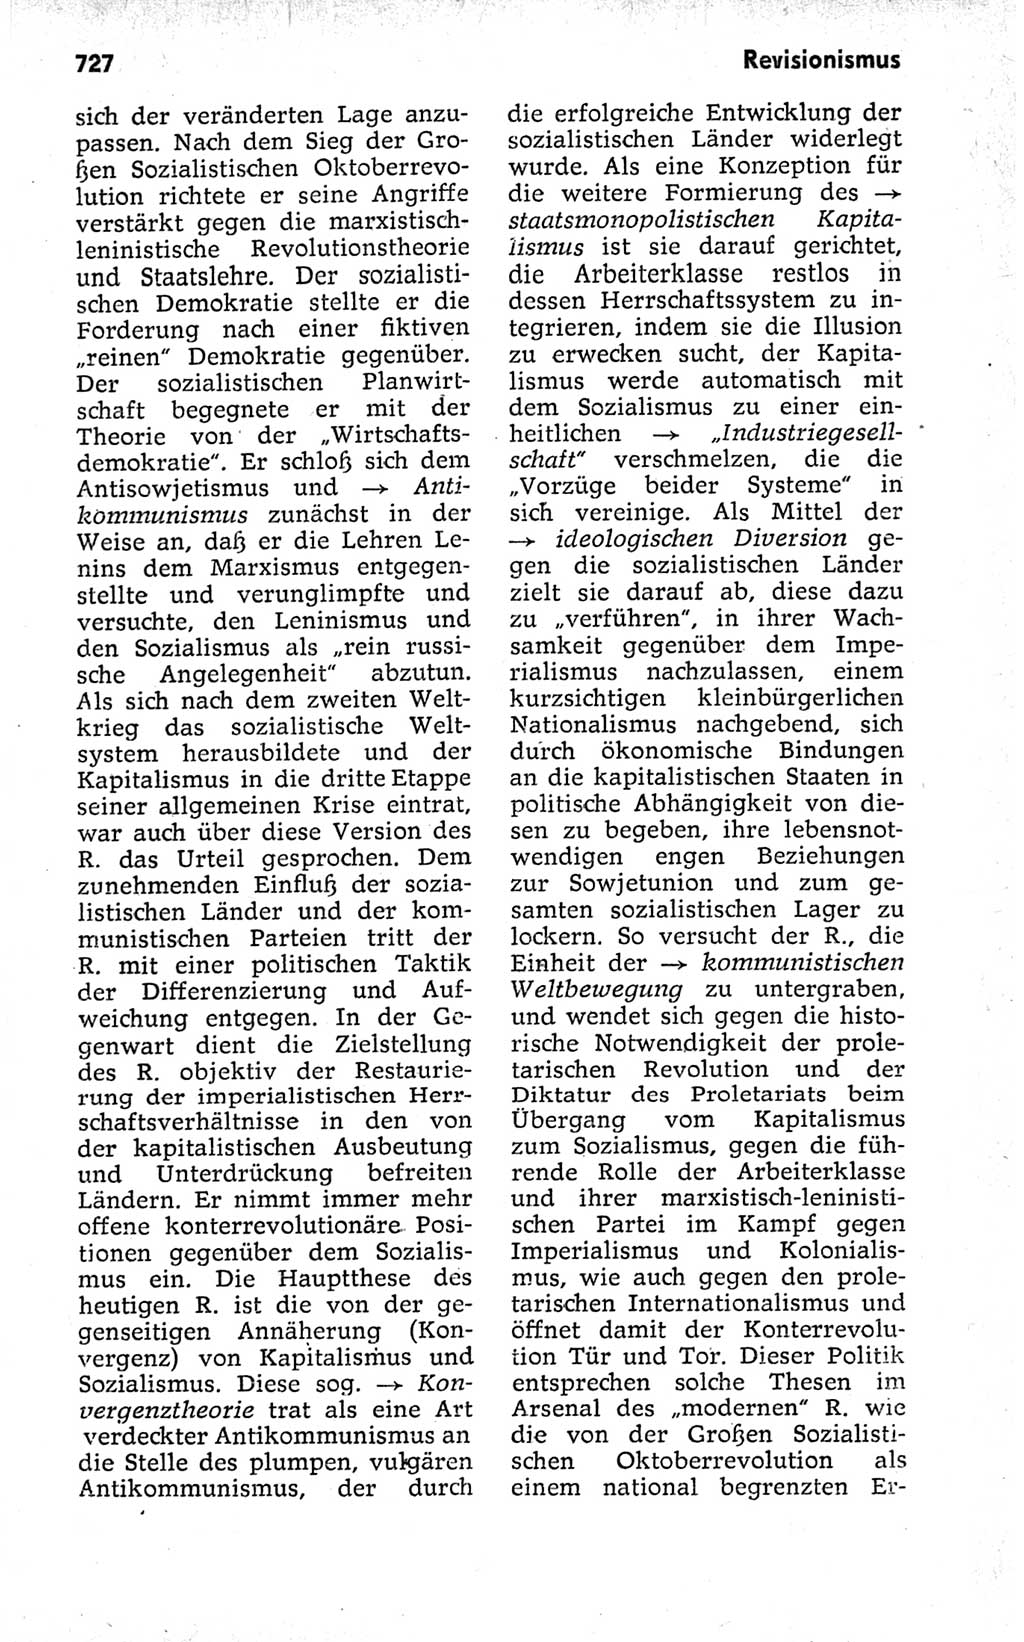 Kleines politisches Wörterbuch [Deutsche Demokratische Republik (DDR)] 1973, Seite 727 (Kl. pol. Wb. DDR 1973, S. 727)